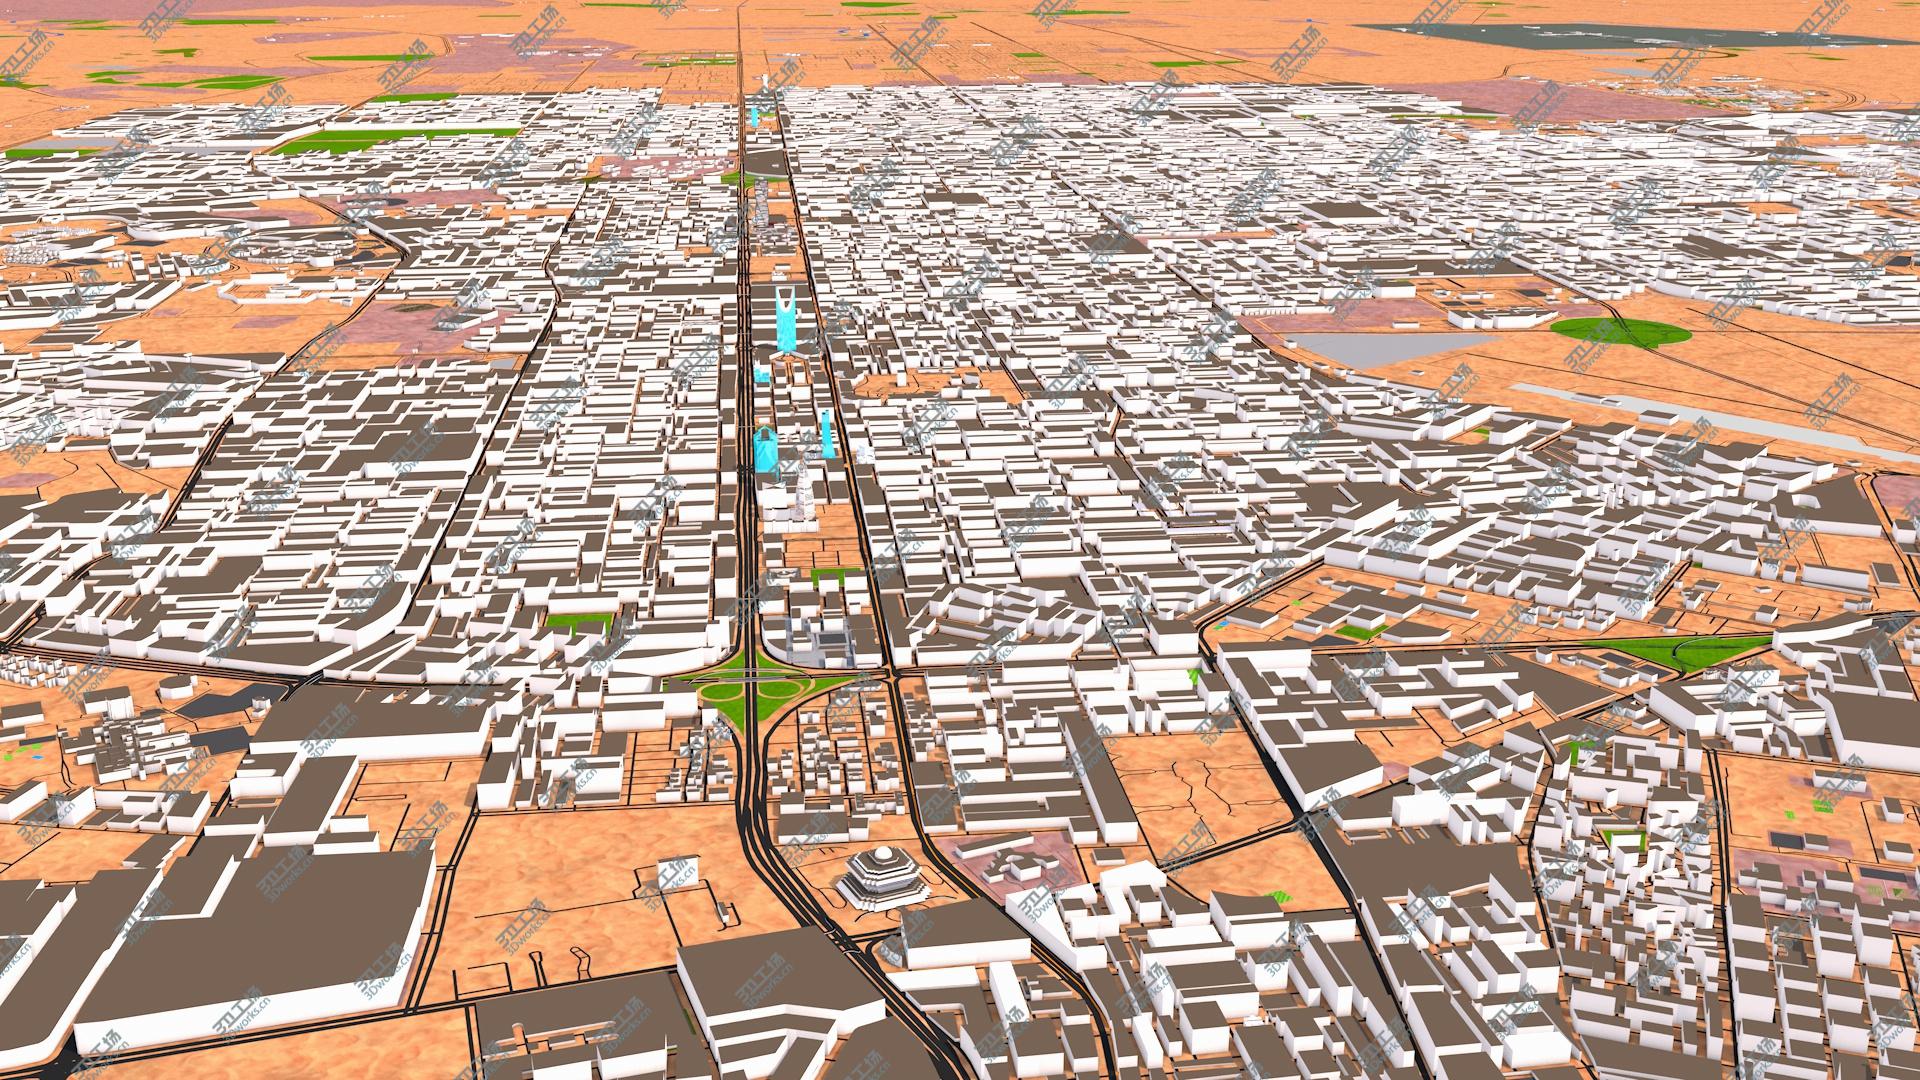 images/goods_img/20210113/Riyadh City Sep 2020 3d model 3D/2.jpg